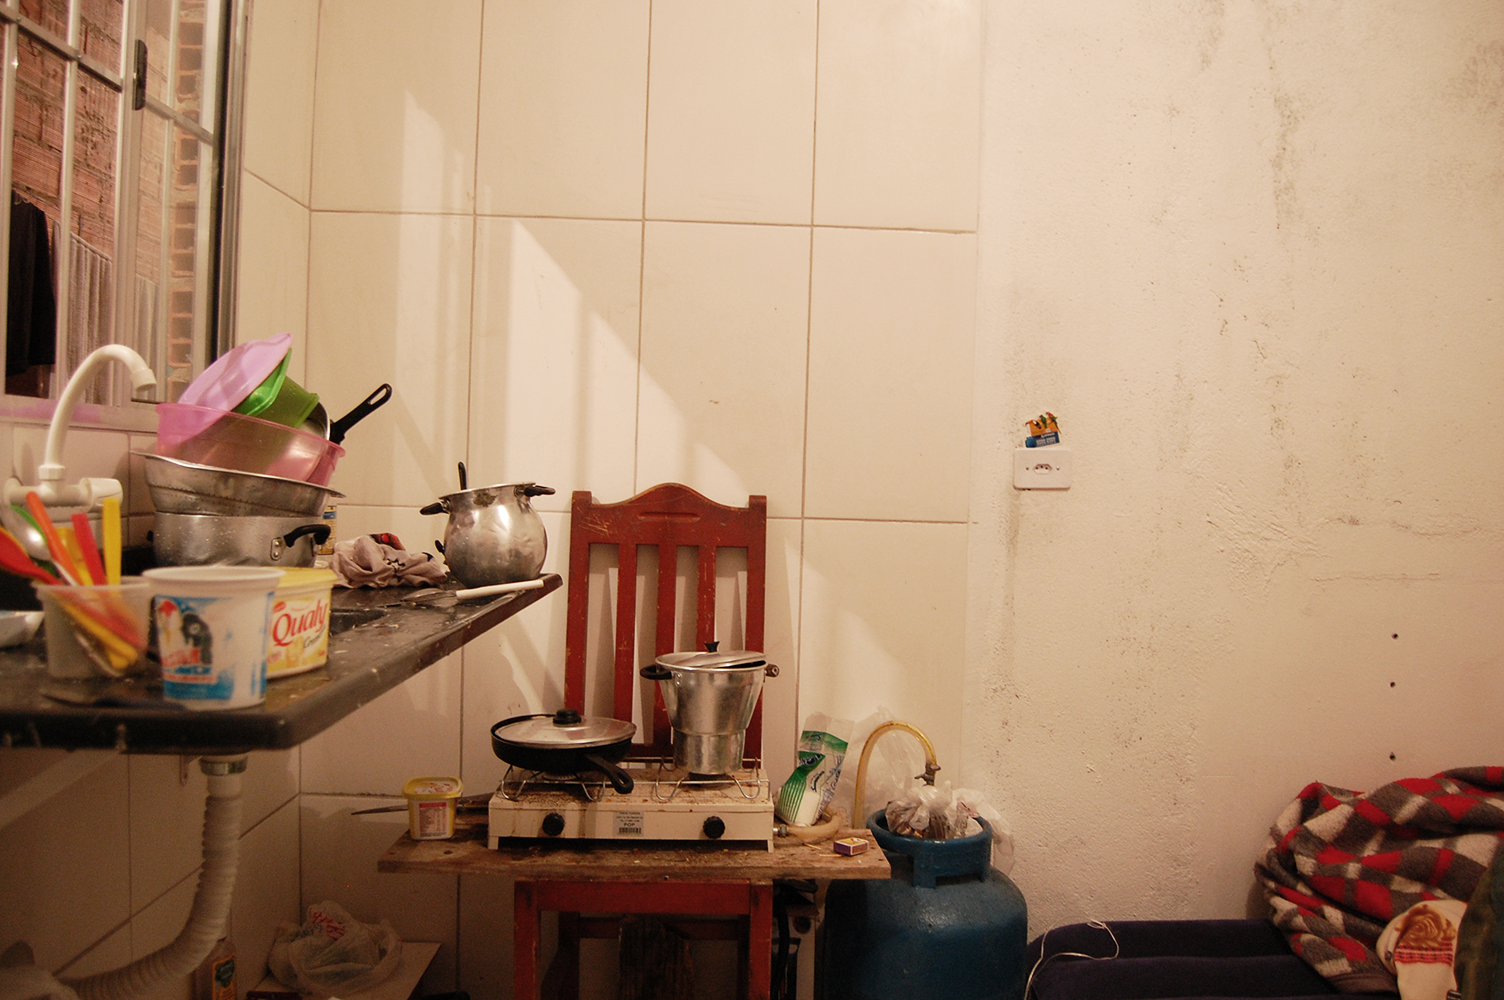 Cozinha de uma das casas: o fogão portátil comprado pelos trabalhadores ficava em cima de uma cadeira, ligado ao botijão de gás no pé do colchão de ar onde um deles dormia (Foto: Stefano Wrobleski)